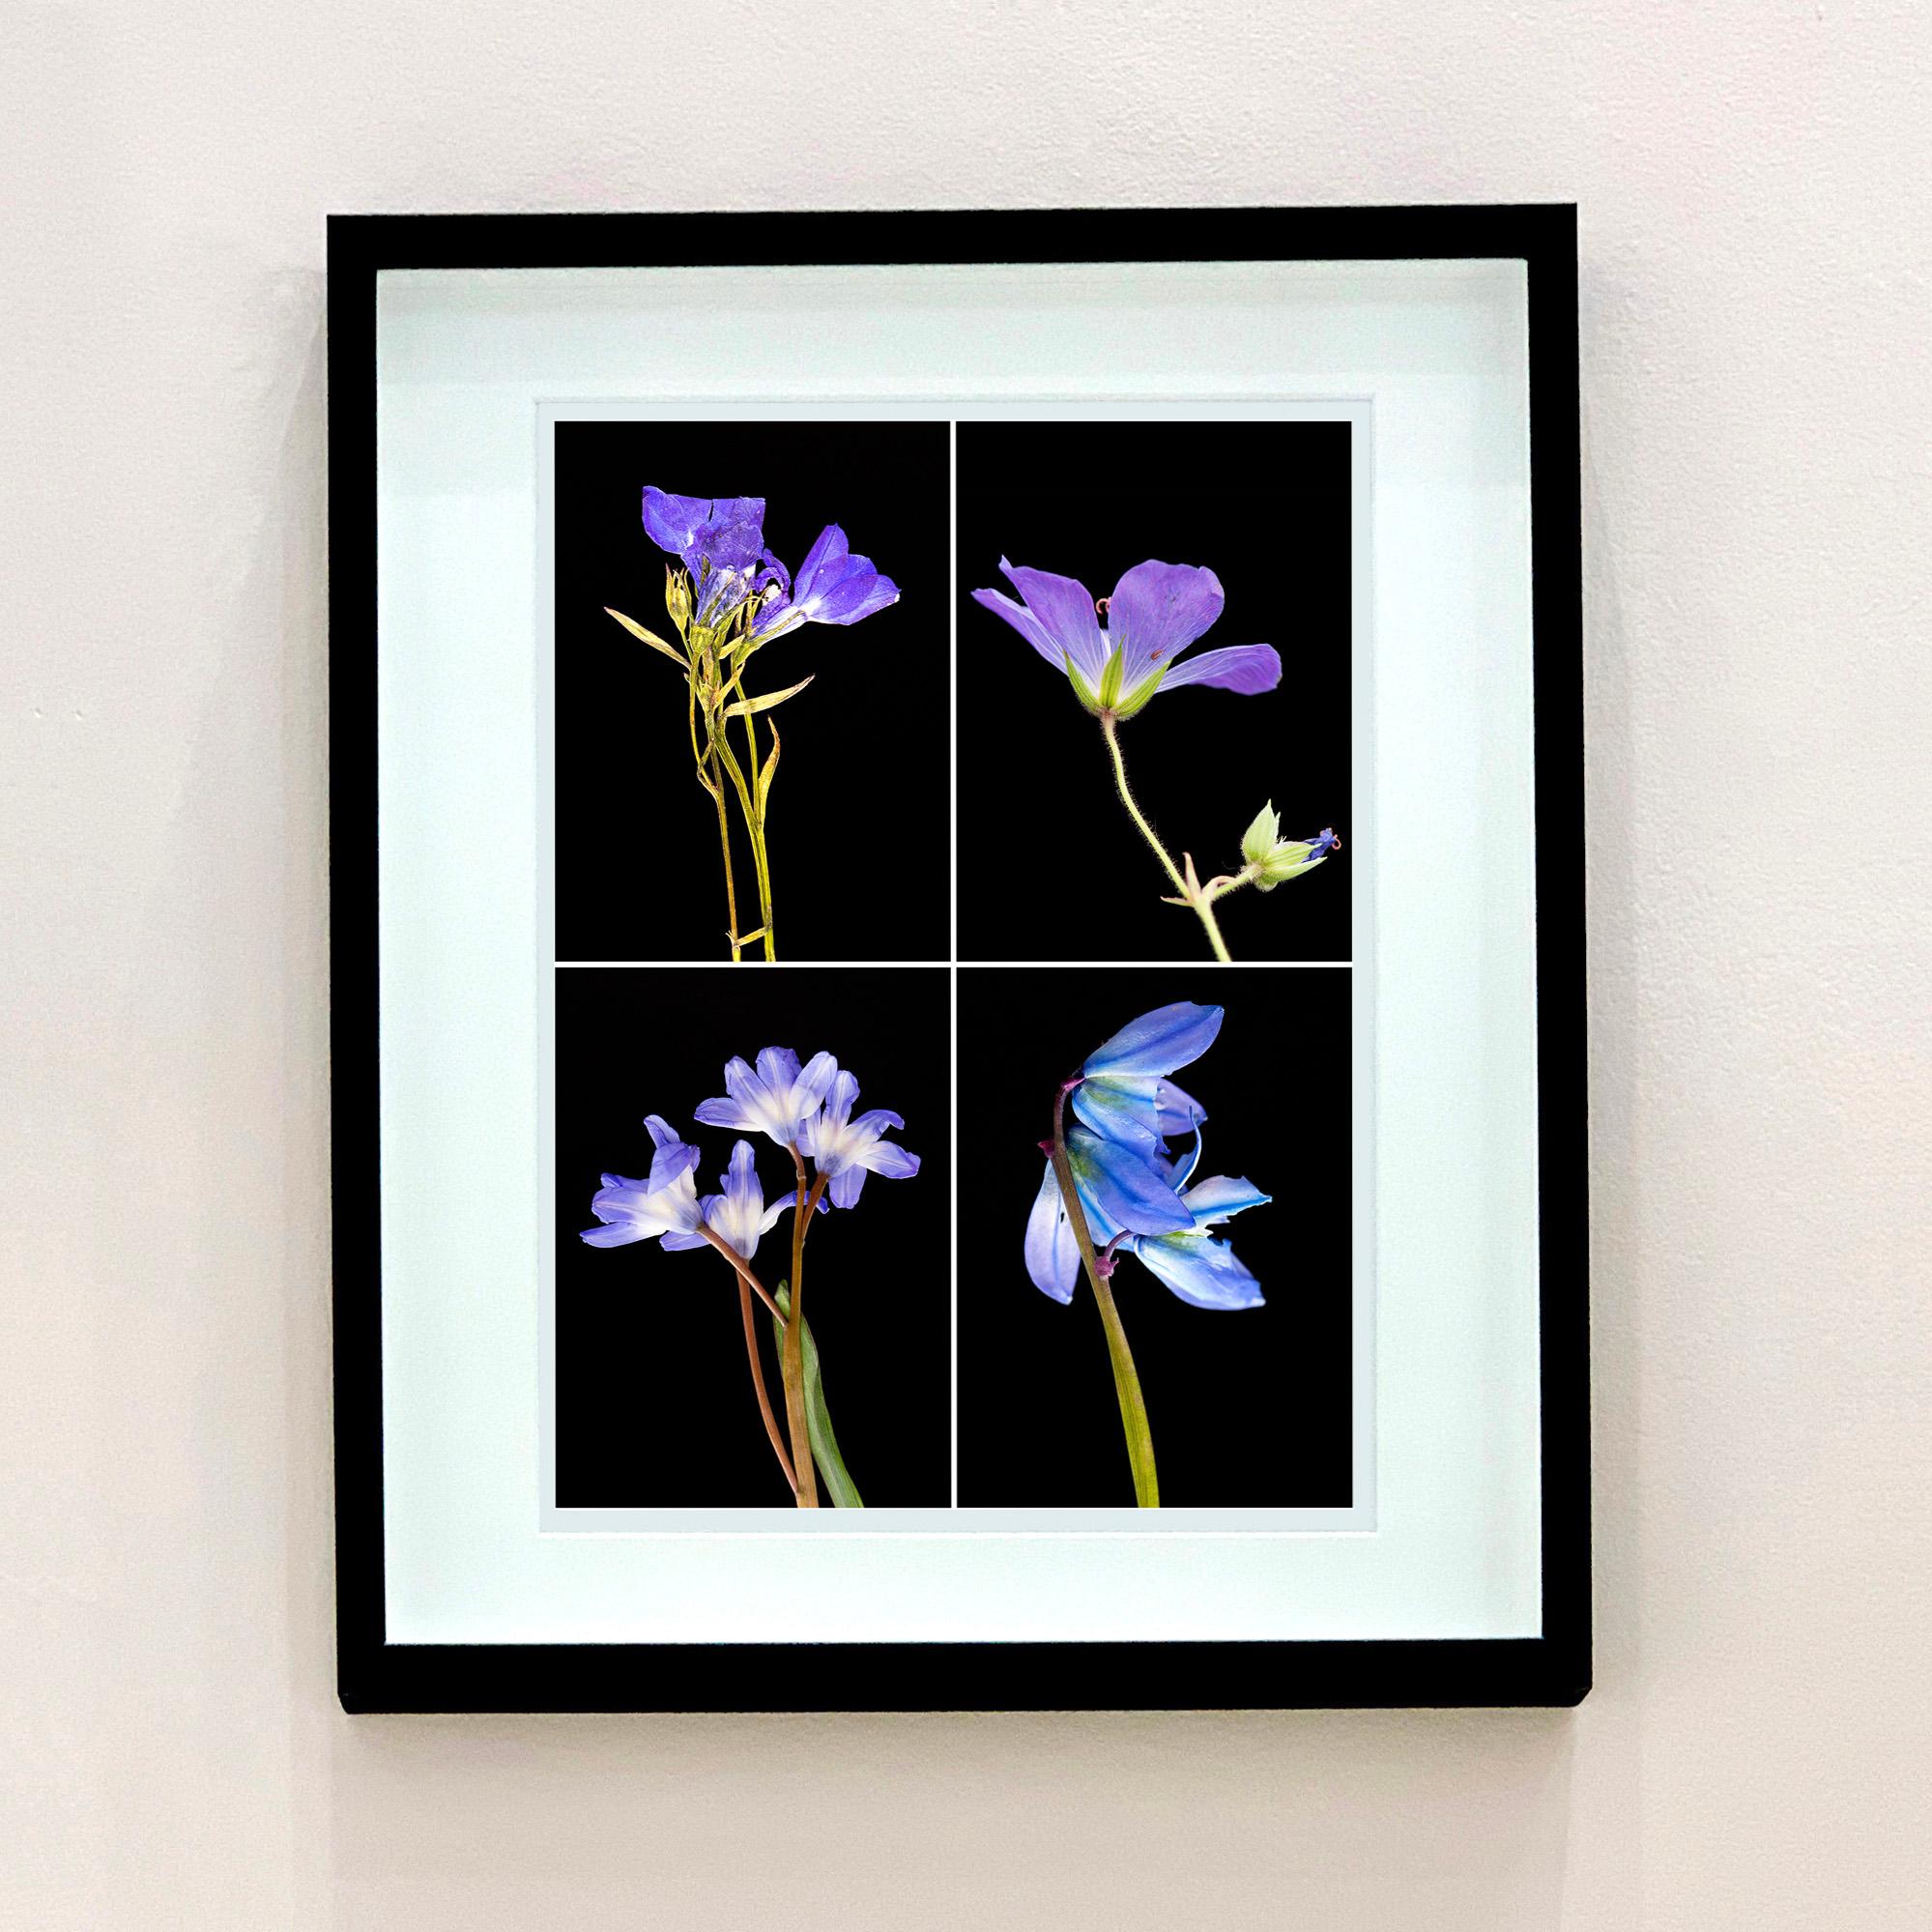 Ensemble de quatre photographies encadrées de fleurs botaniques pressées de Martin Parker.

Les photographies innovantes de Martin sont créées à partir de plantes cultivées par lui-même dans son jardin et sa serre à Cambridge. Horticulteur